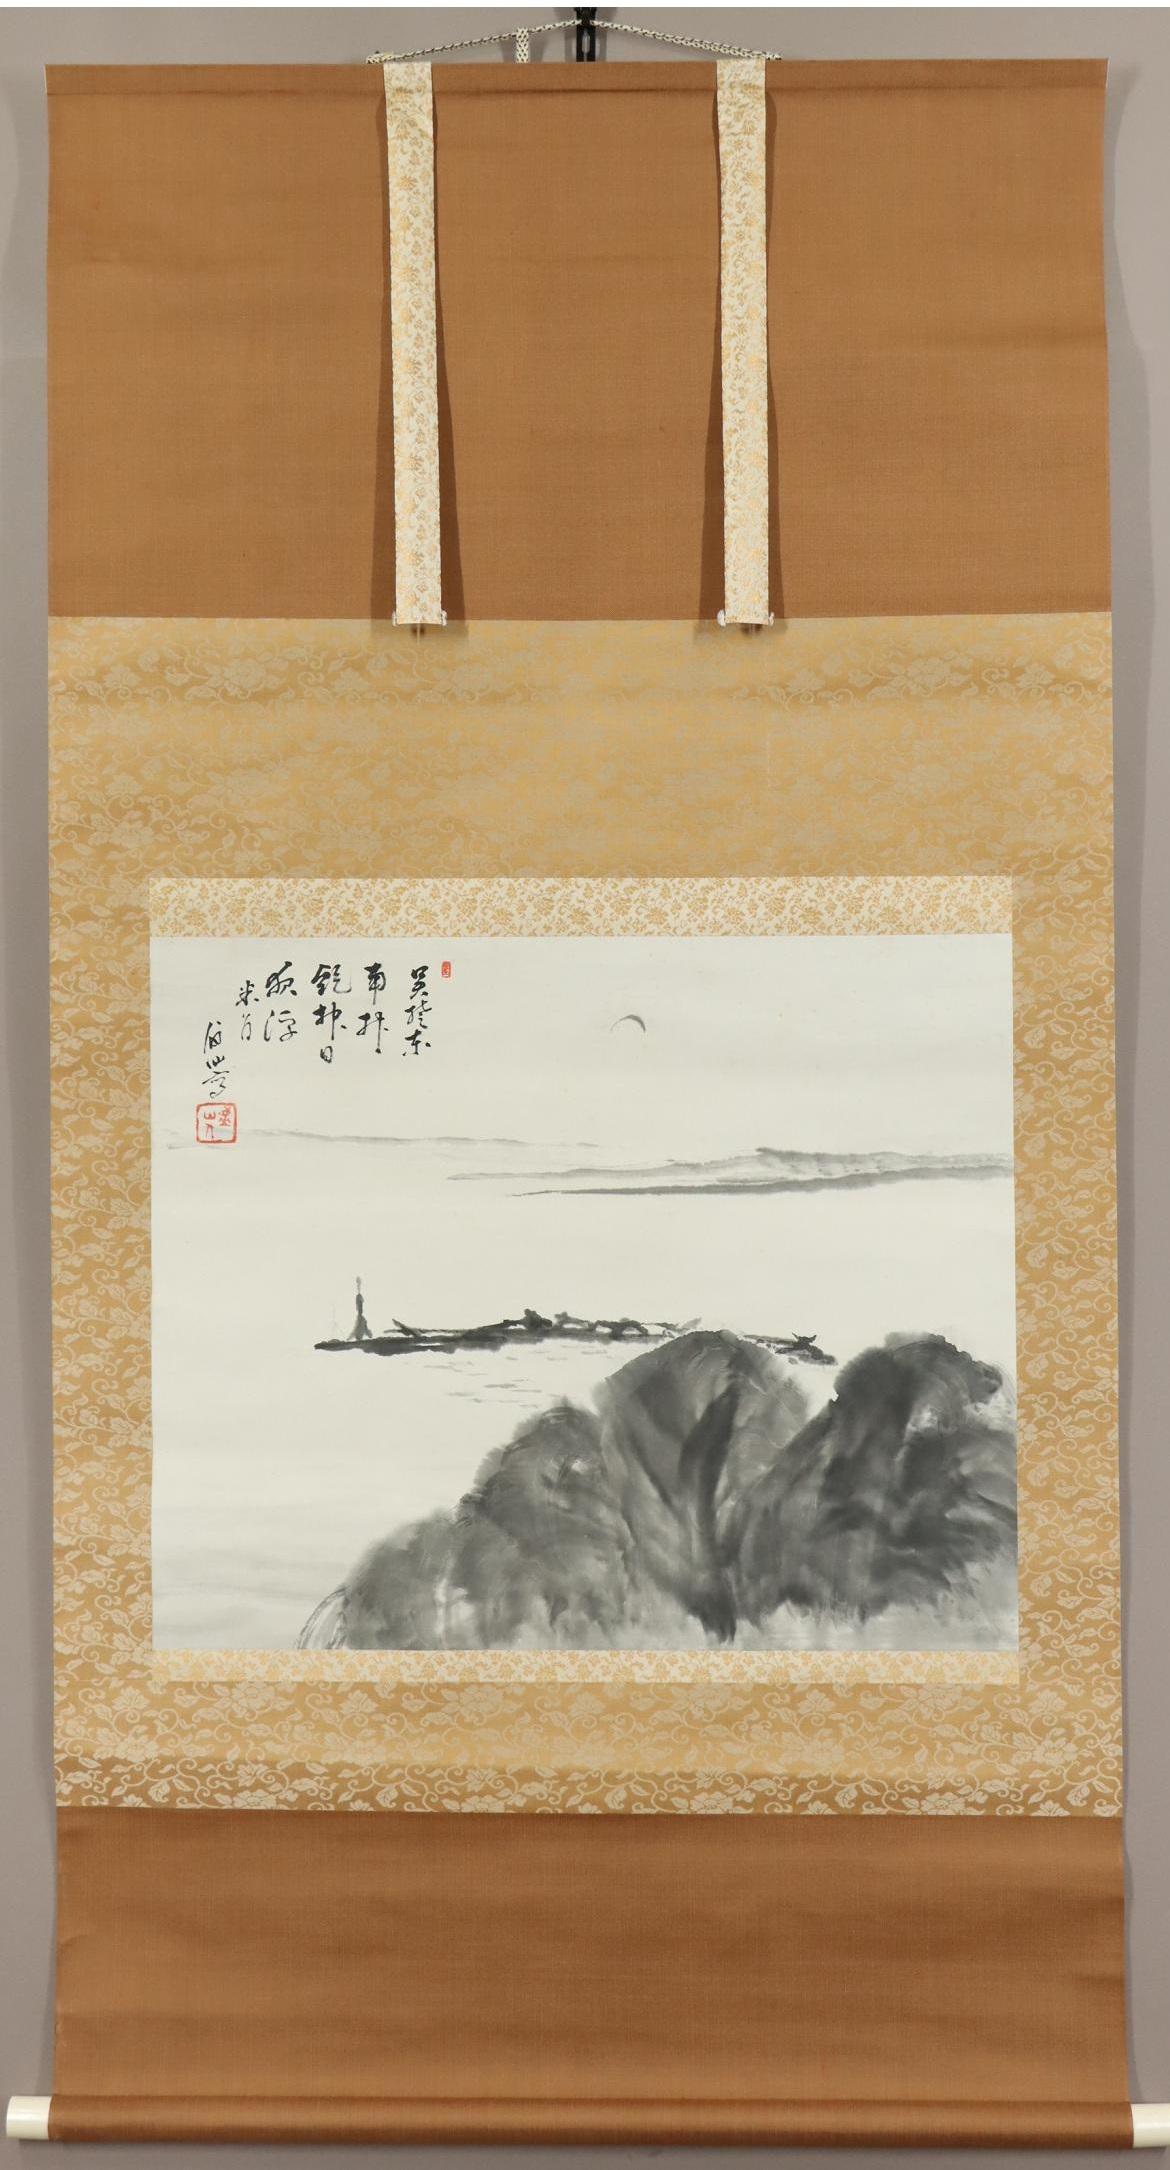 [Oeuvre d'art authentique] ◆ Bisen Fukuda ◆ Paysage chinois ◆ Lac Dongting ◆ Illustration du Grand Dongting ◆ Boîte ◆ Peint à la main ◆ Papier ◆ Rouleau à suspendre ◆

Découvrez l'univers artistique de Bisen Fukuda à travers cette œuvre captivante